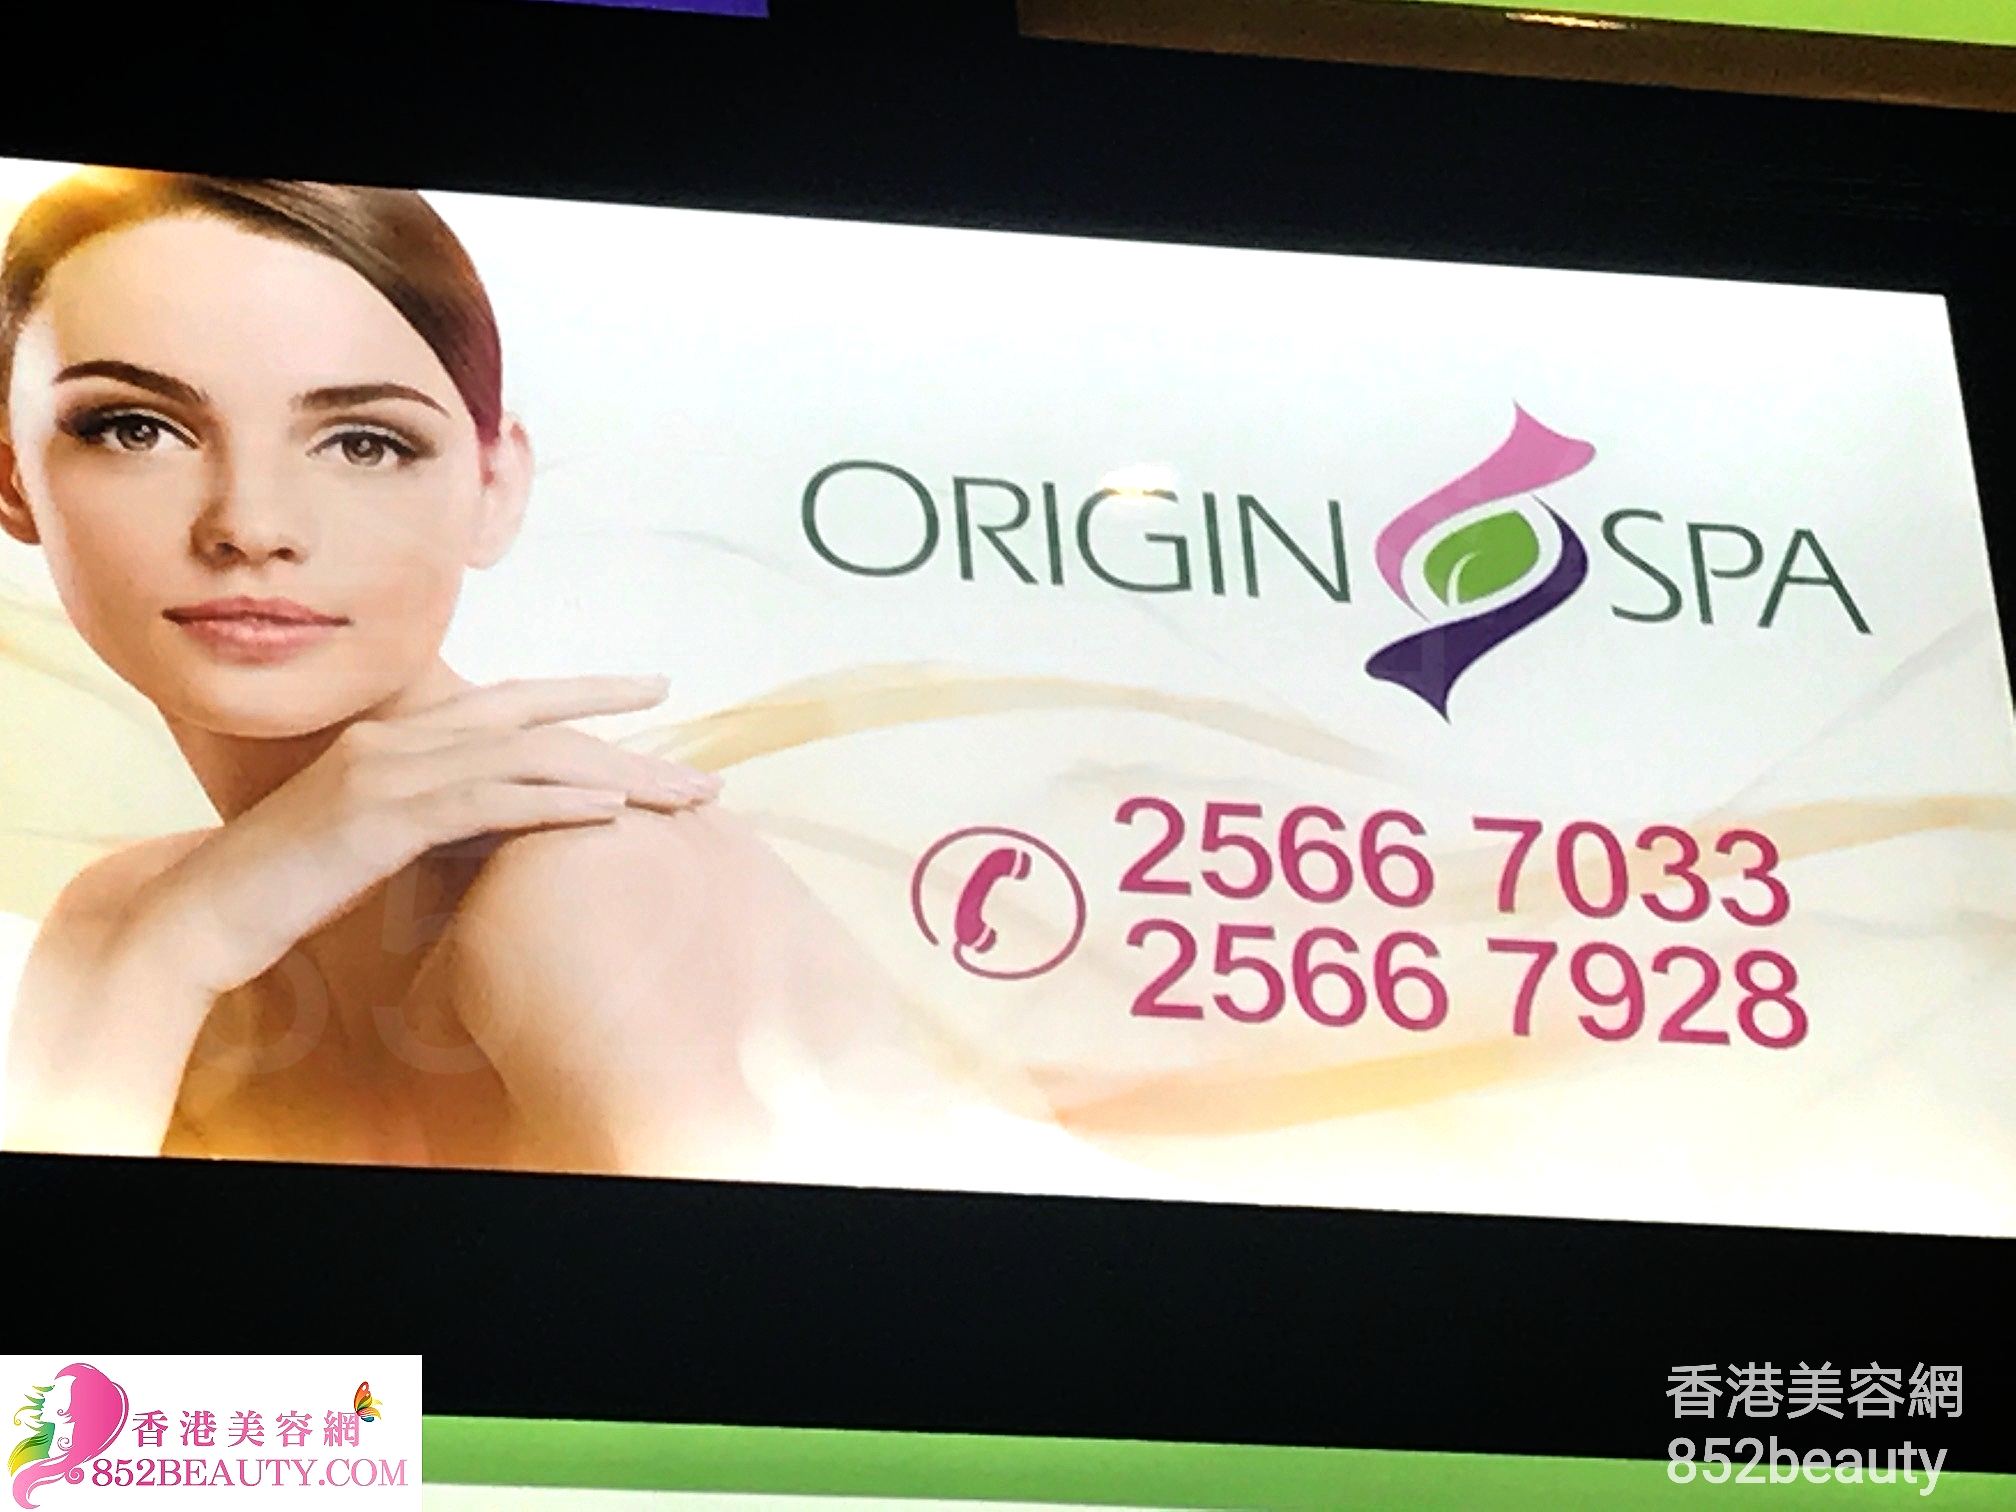 美容院 Beauty Salon: Origin SPA (觀塘店)